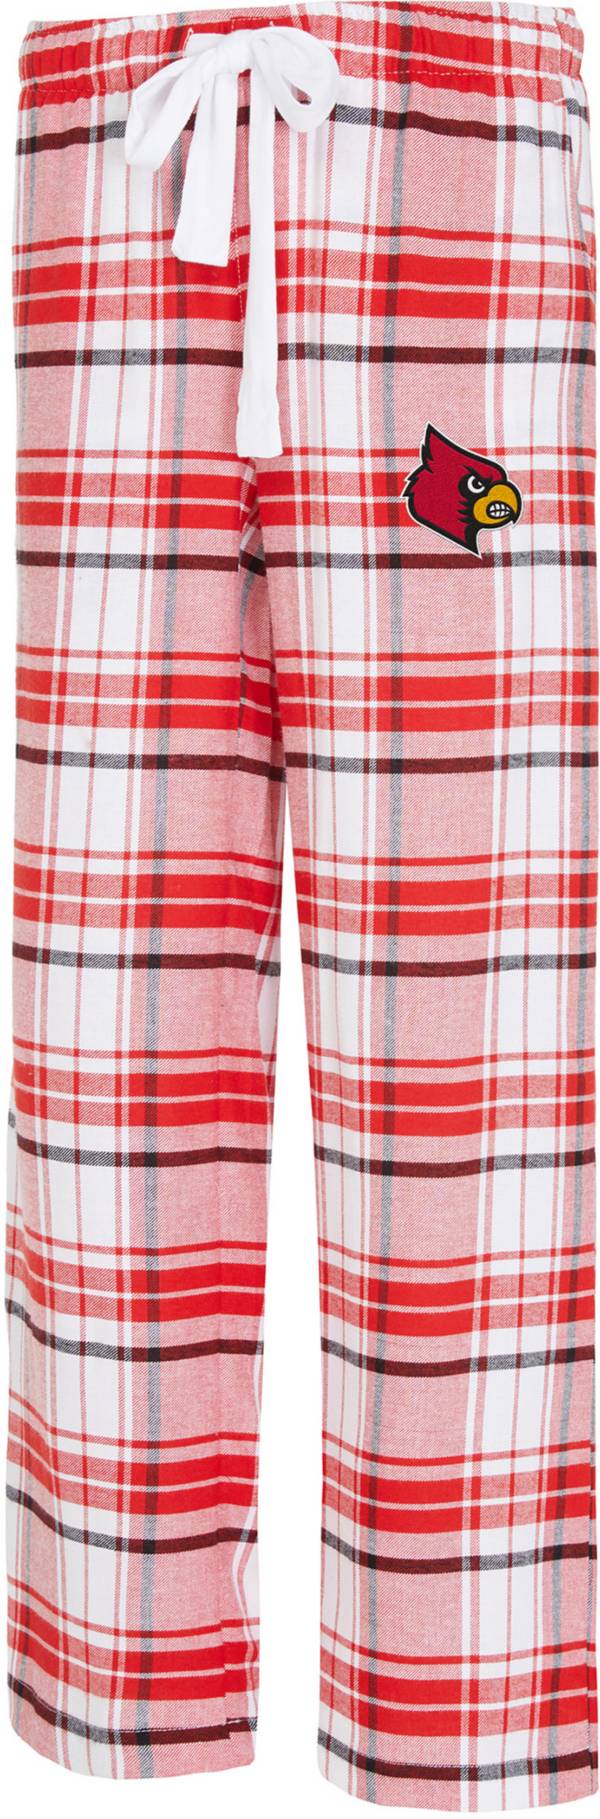 louisville cardinals pajama pants